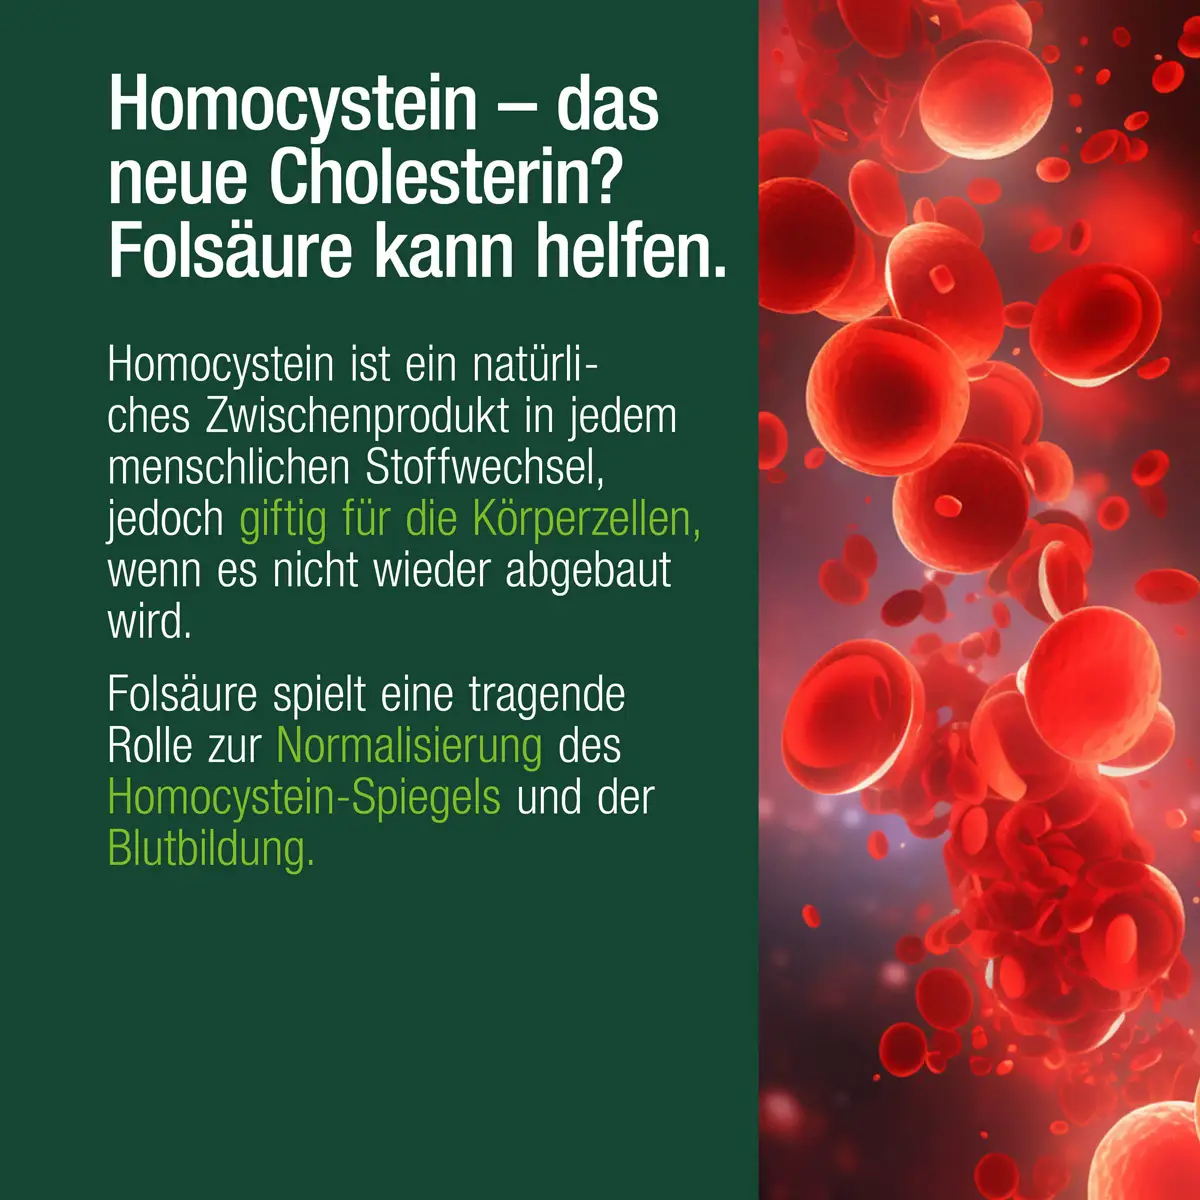 Folsäure unterstützt den normalen Homocystein-Stoffwechsel. Ein zu hoher Homocystein-Spiegel kann zu Herz-Kreislauf-Erkrankungen führen.